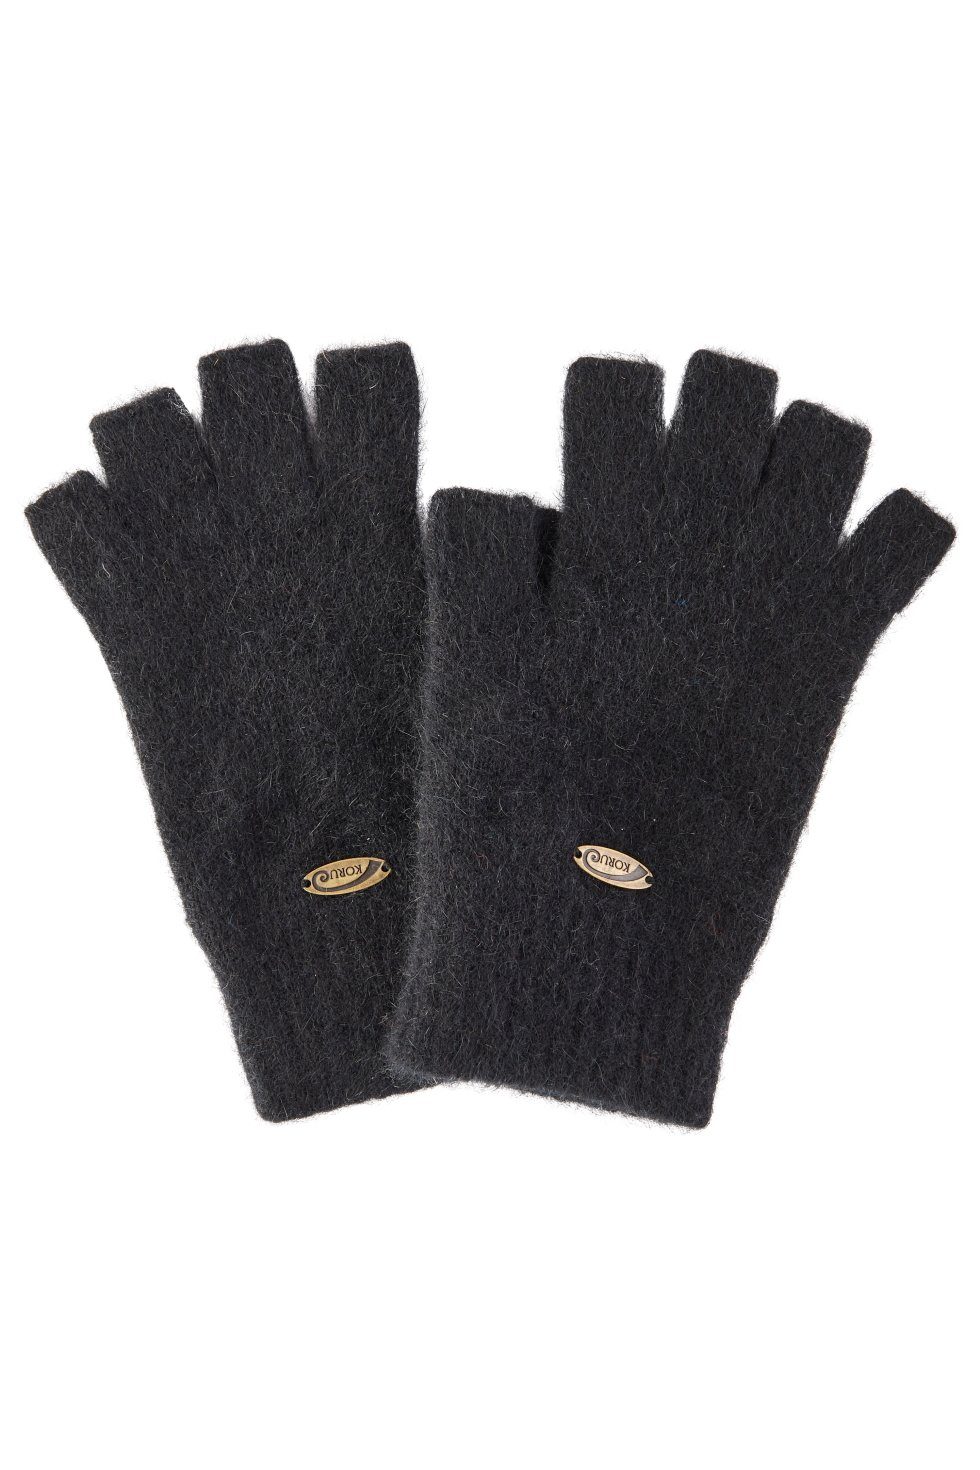 Koru Knitwear Strickhandschuhe Possum Merino Halbfinger Handschuhe aus der Possumhaarfaser schwarz